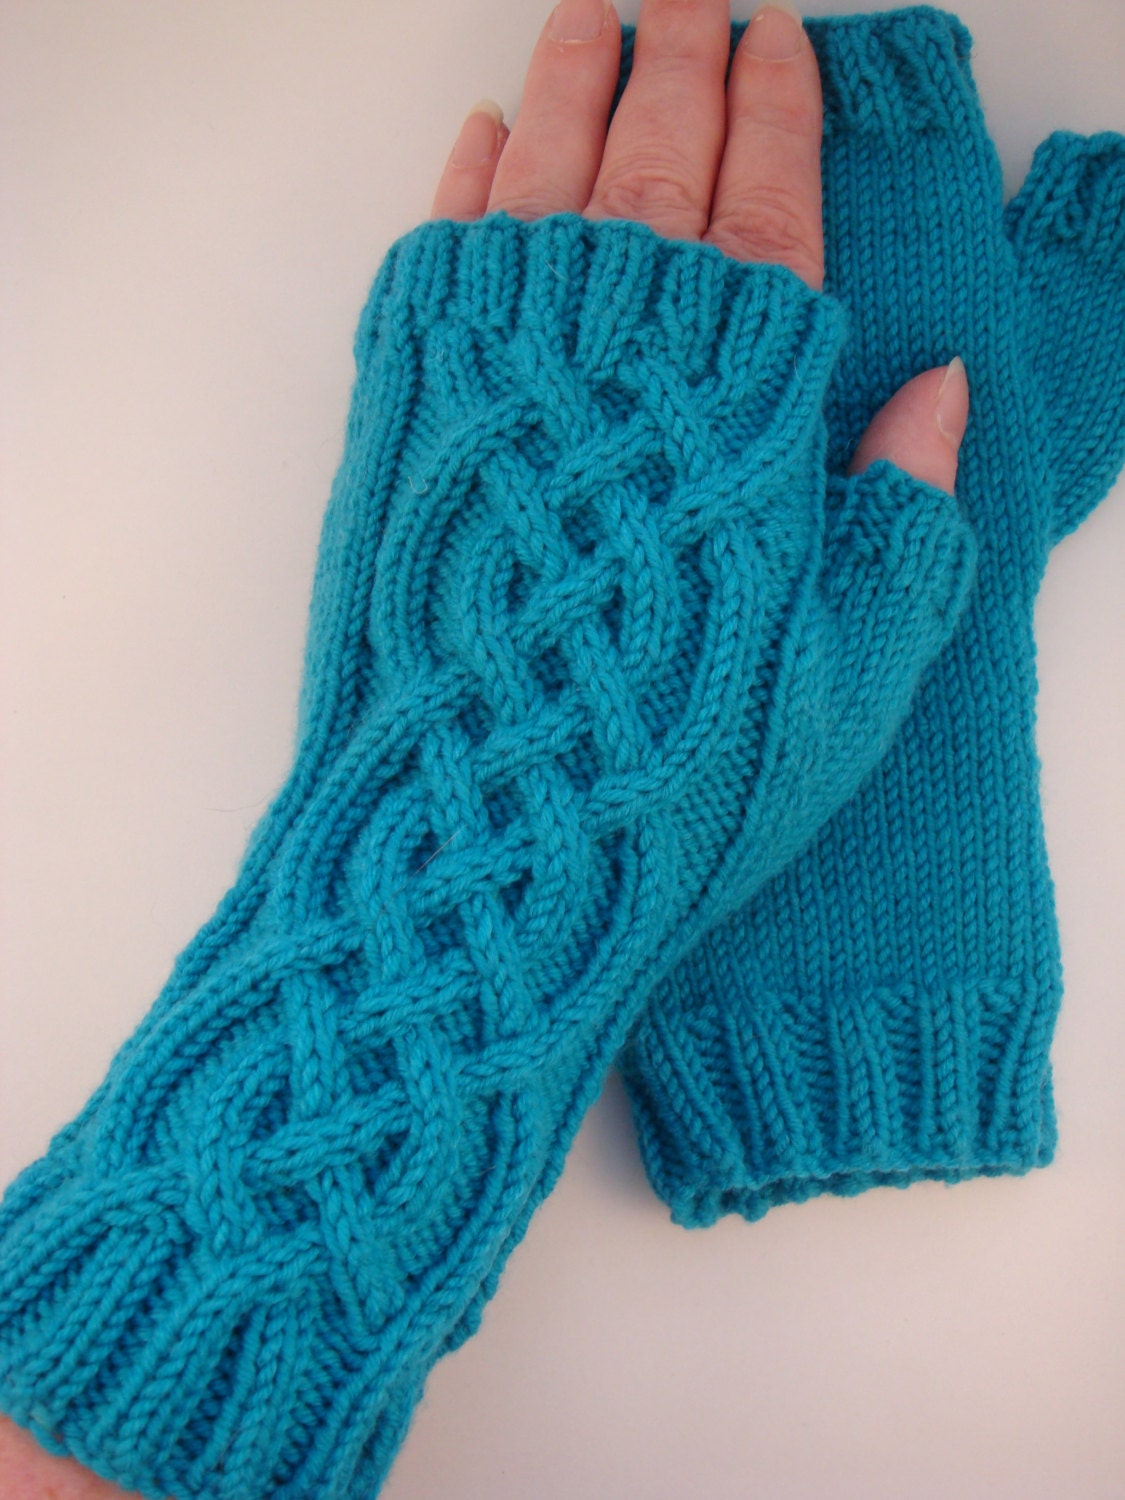 Celtic Cable Fingerless Gloves knitting pattern